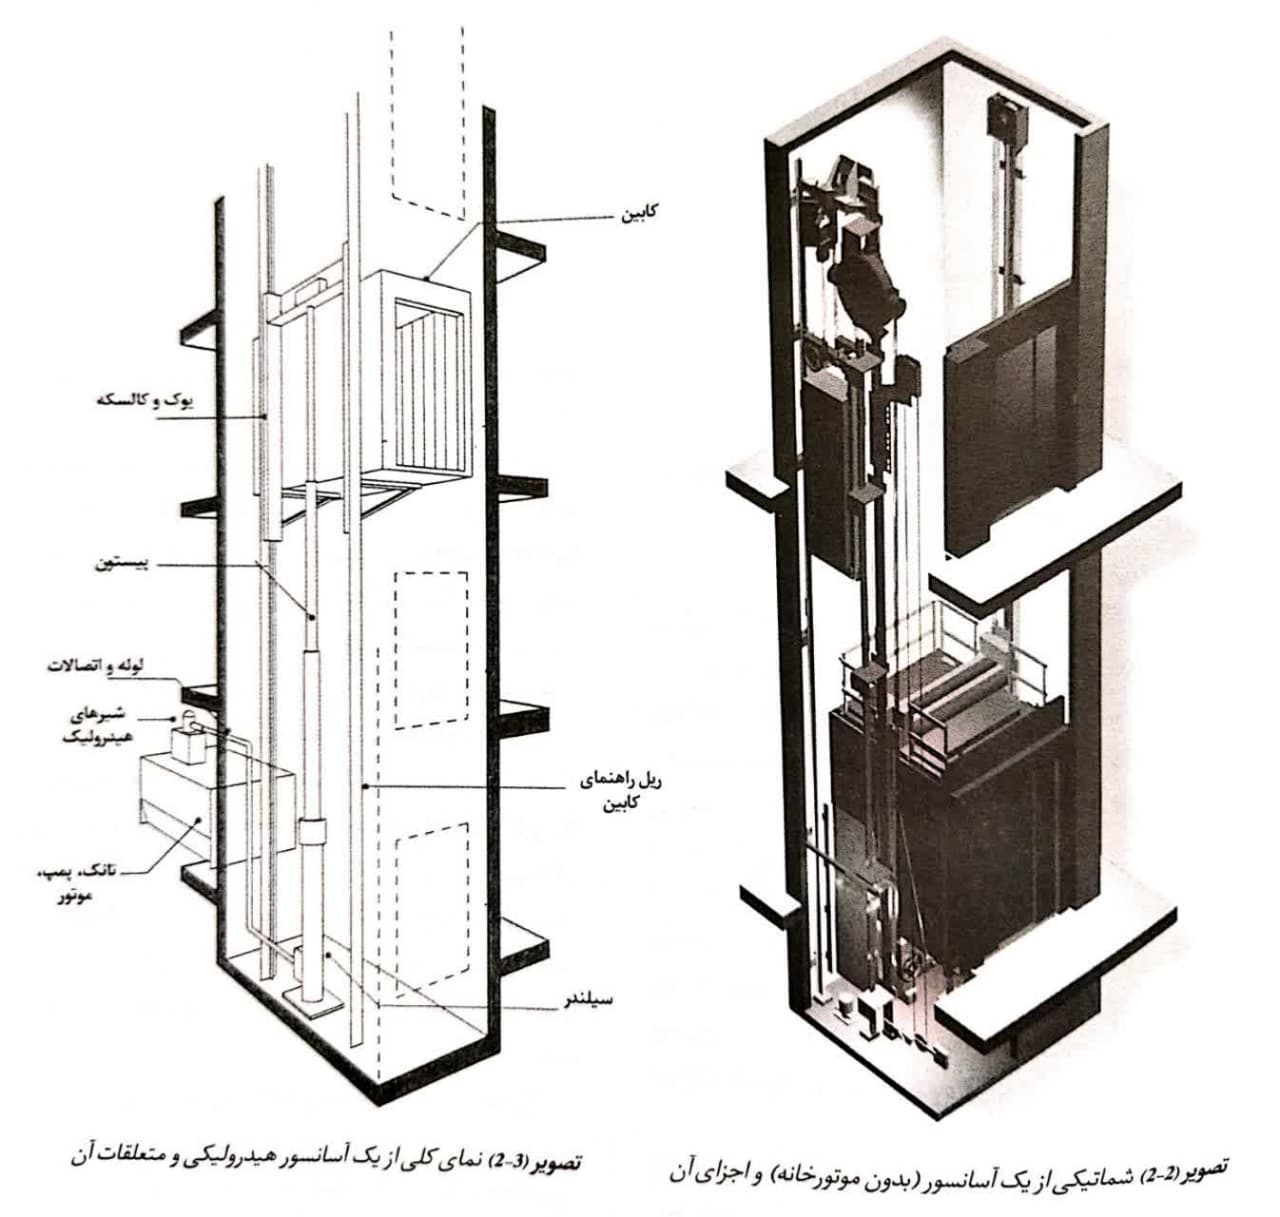 نمای کلی از یک آسانسور هیدرولیک